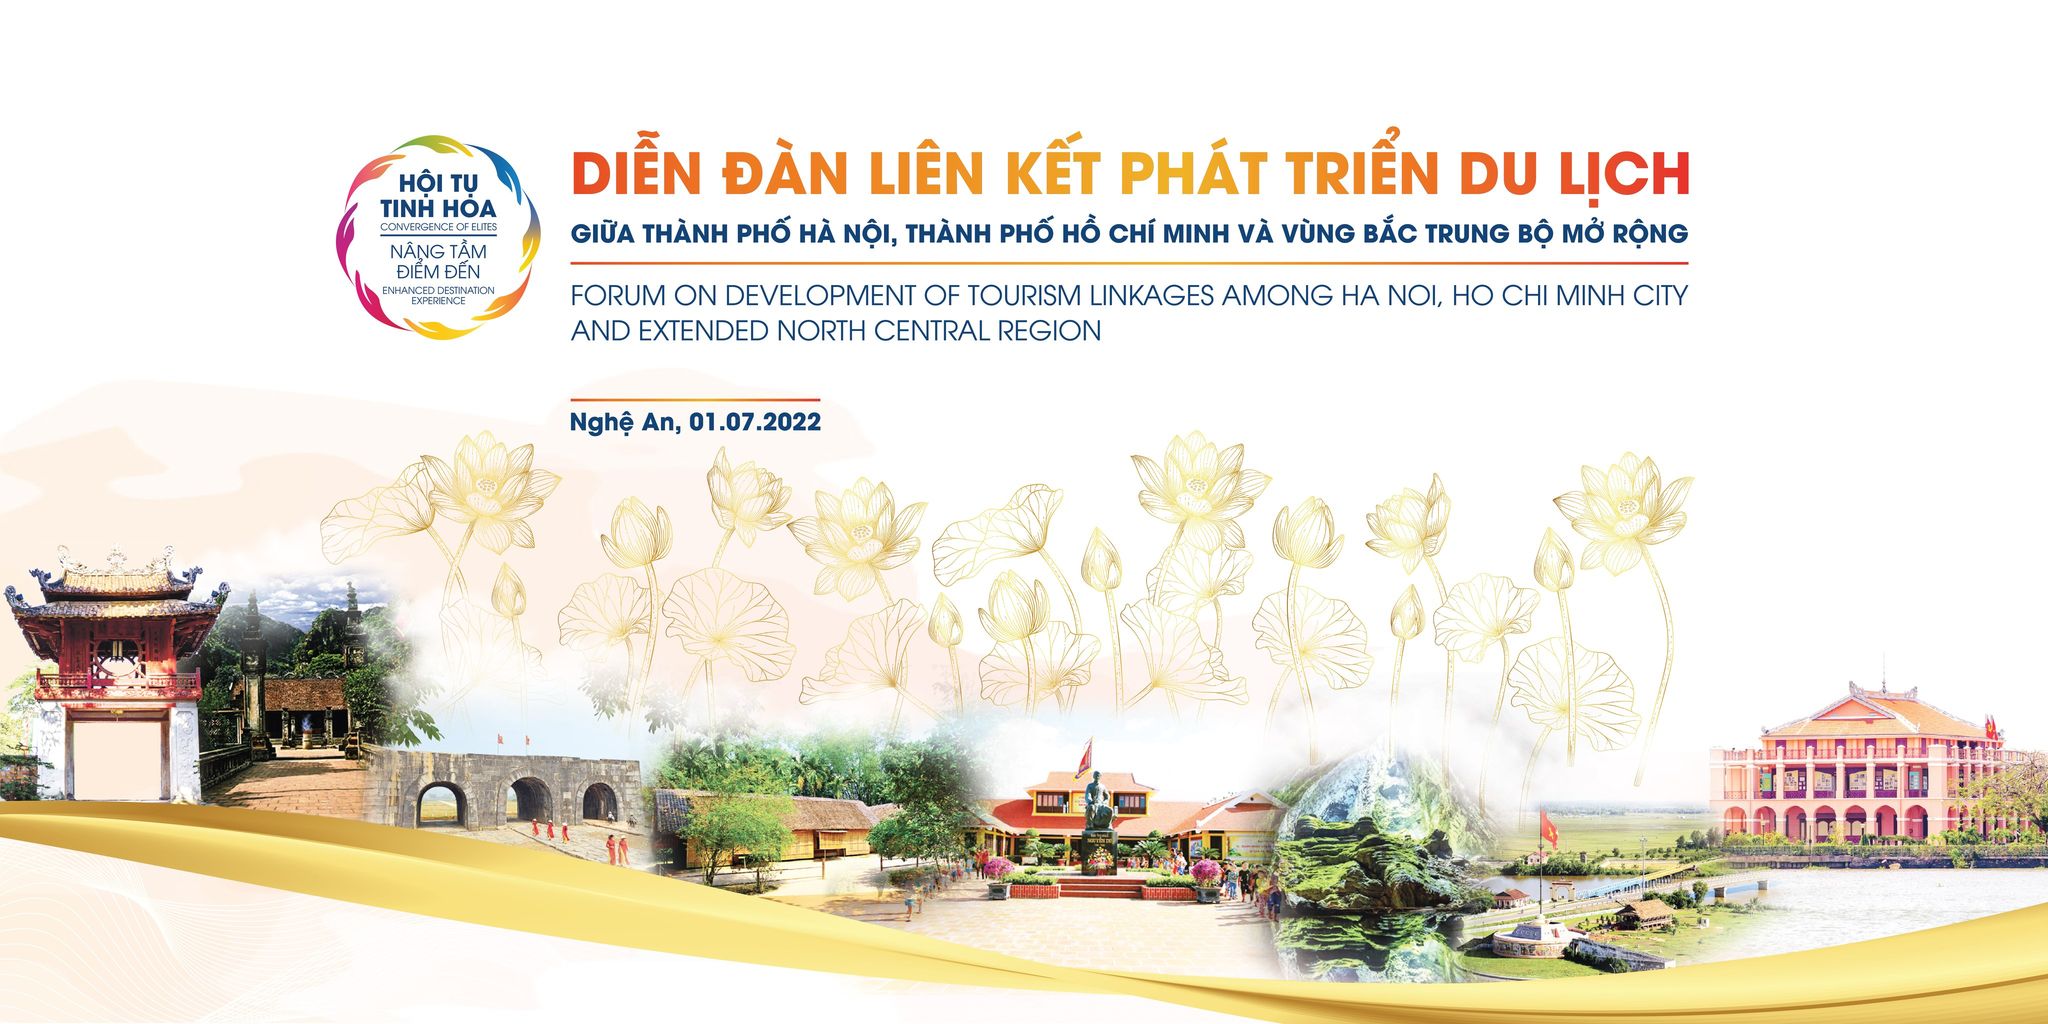 Địa điểm giải trí ha-noi-tp-hcm-lien-ket-du-lich-voi-vung-bac-trung-bo-mo-rong Hà Nội, TP HCM liên kết du lịch với vùng Bắc Trung Bộ mở rộng Du lịch  